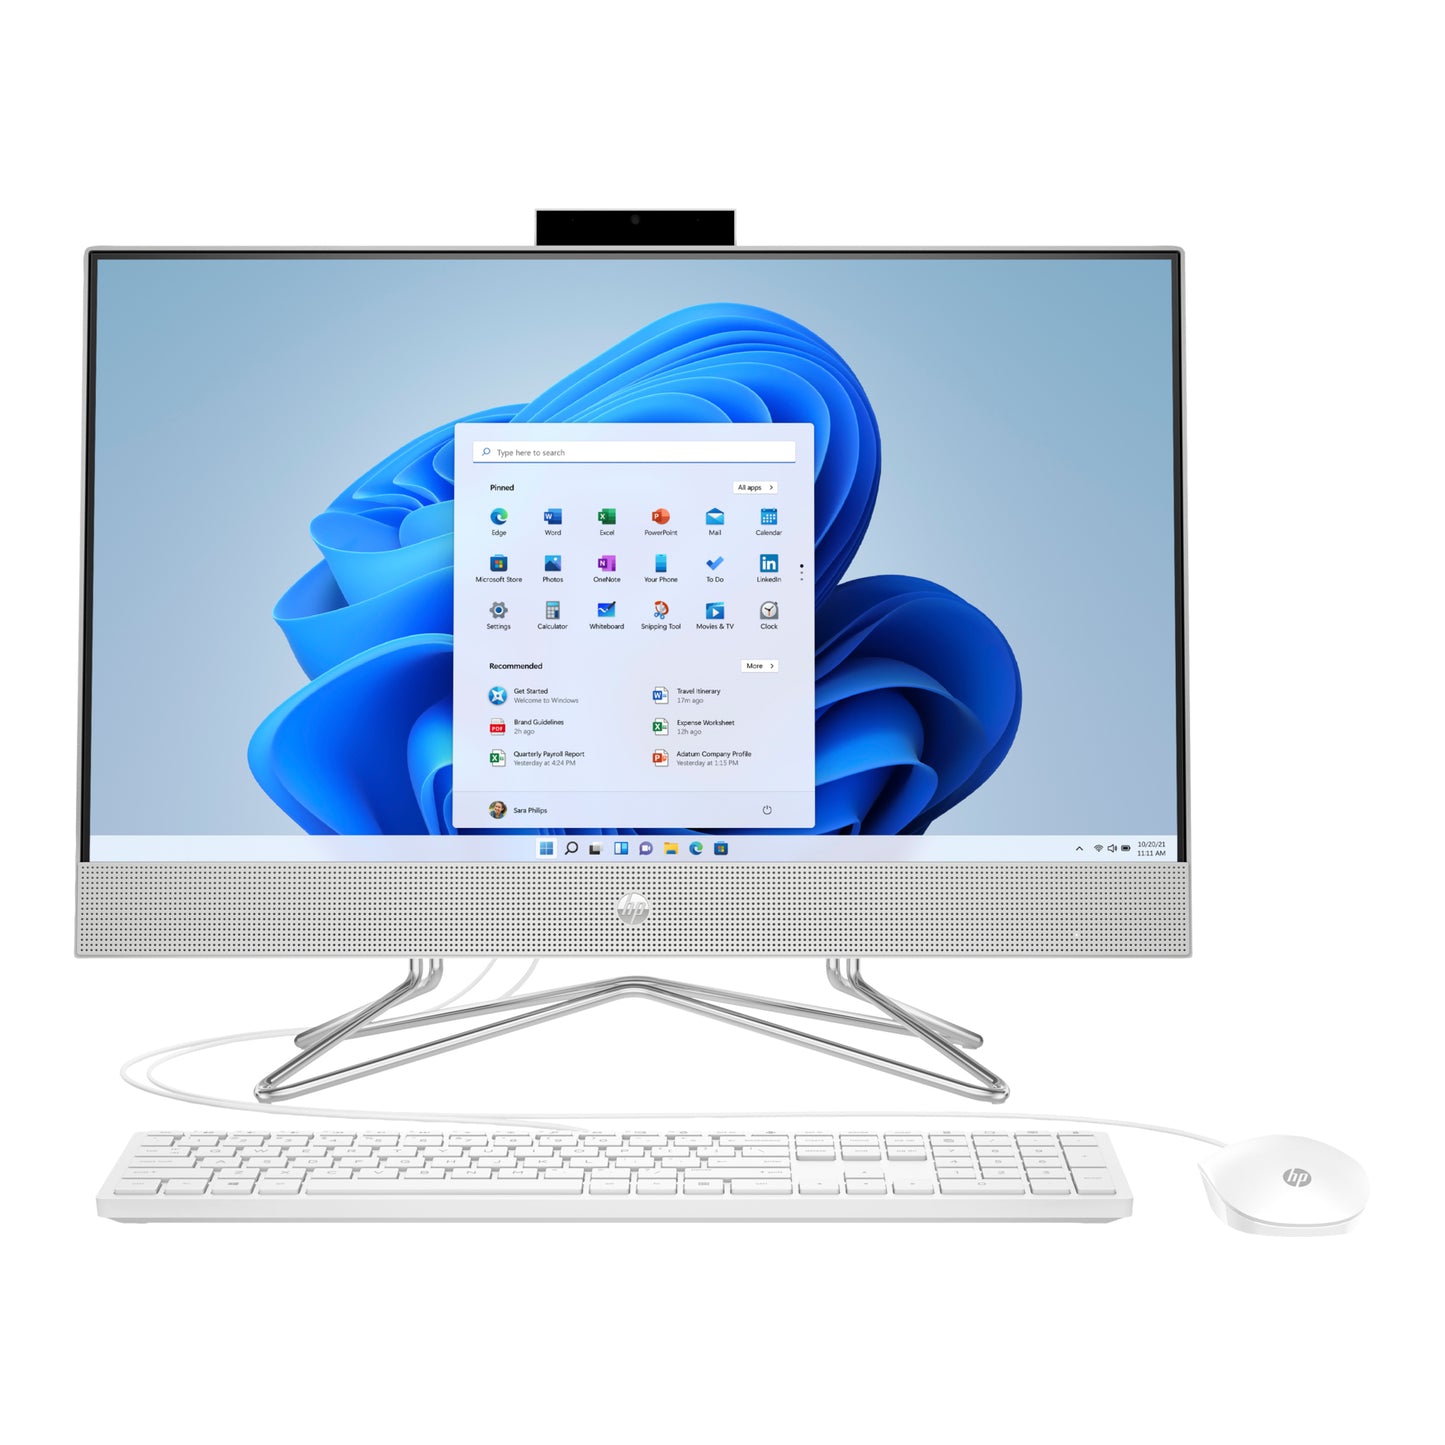 Hp Aio 24-DP1056QE Core i7-1165g7 23.8" Touchscreen Desktop Computer Offers (Brand New)